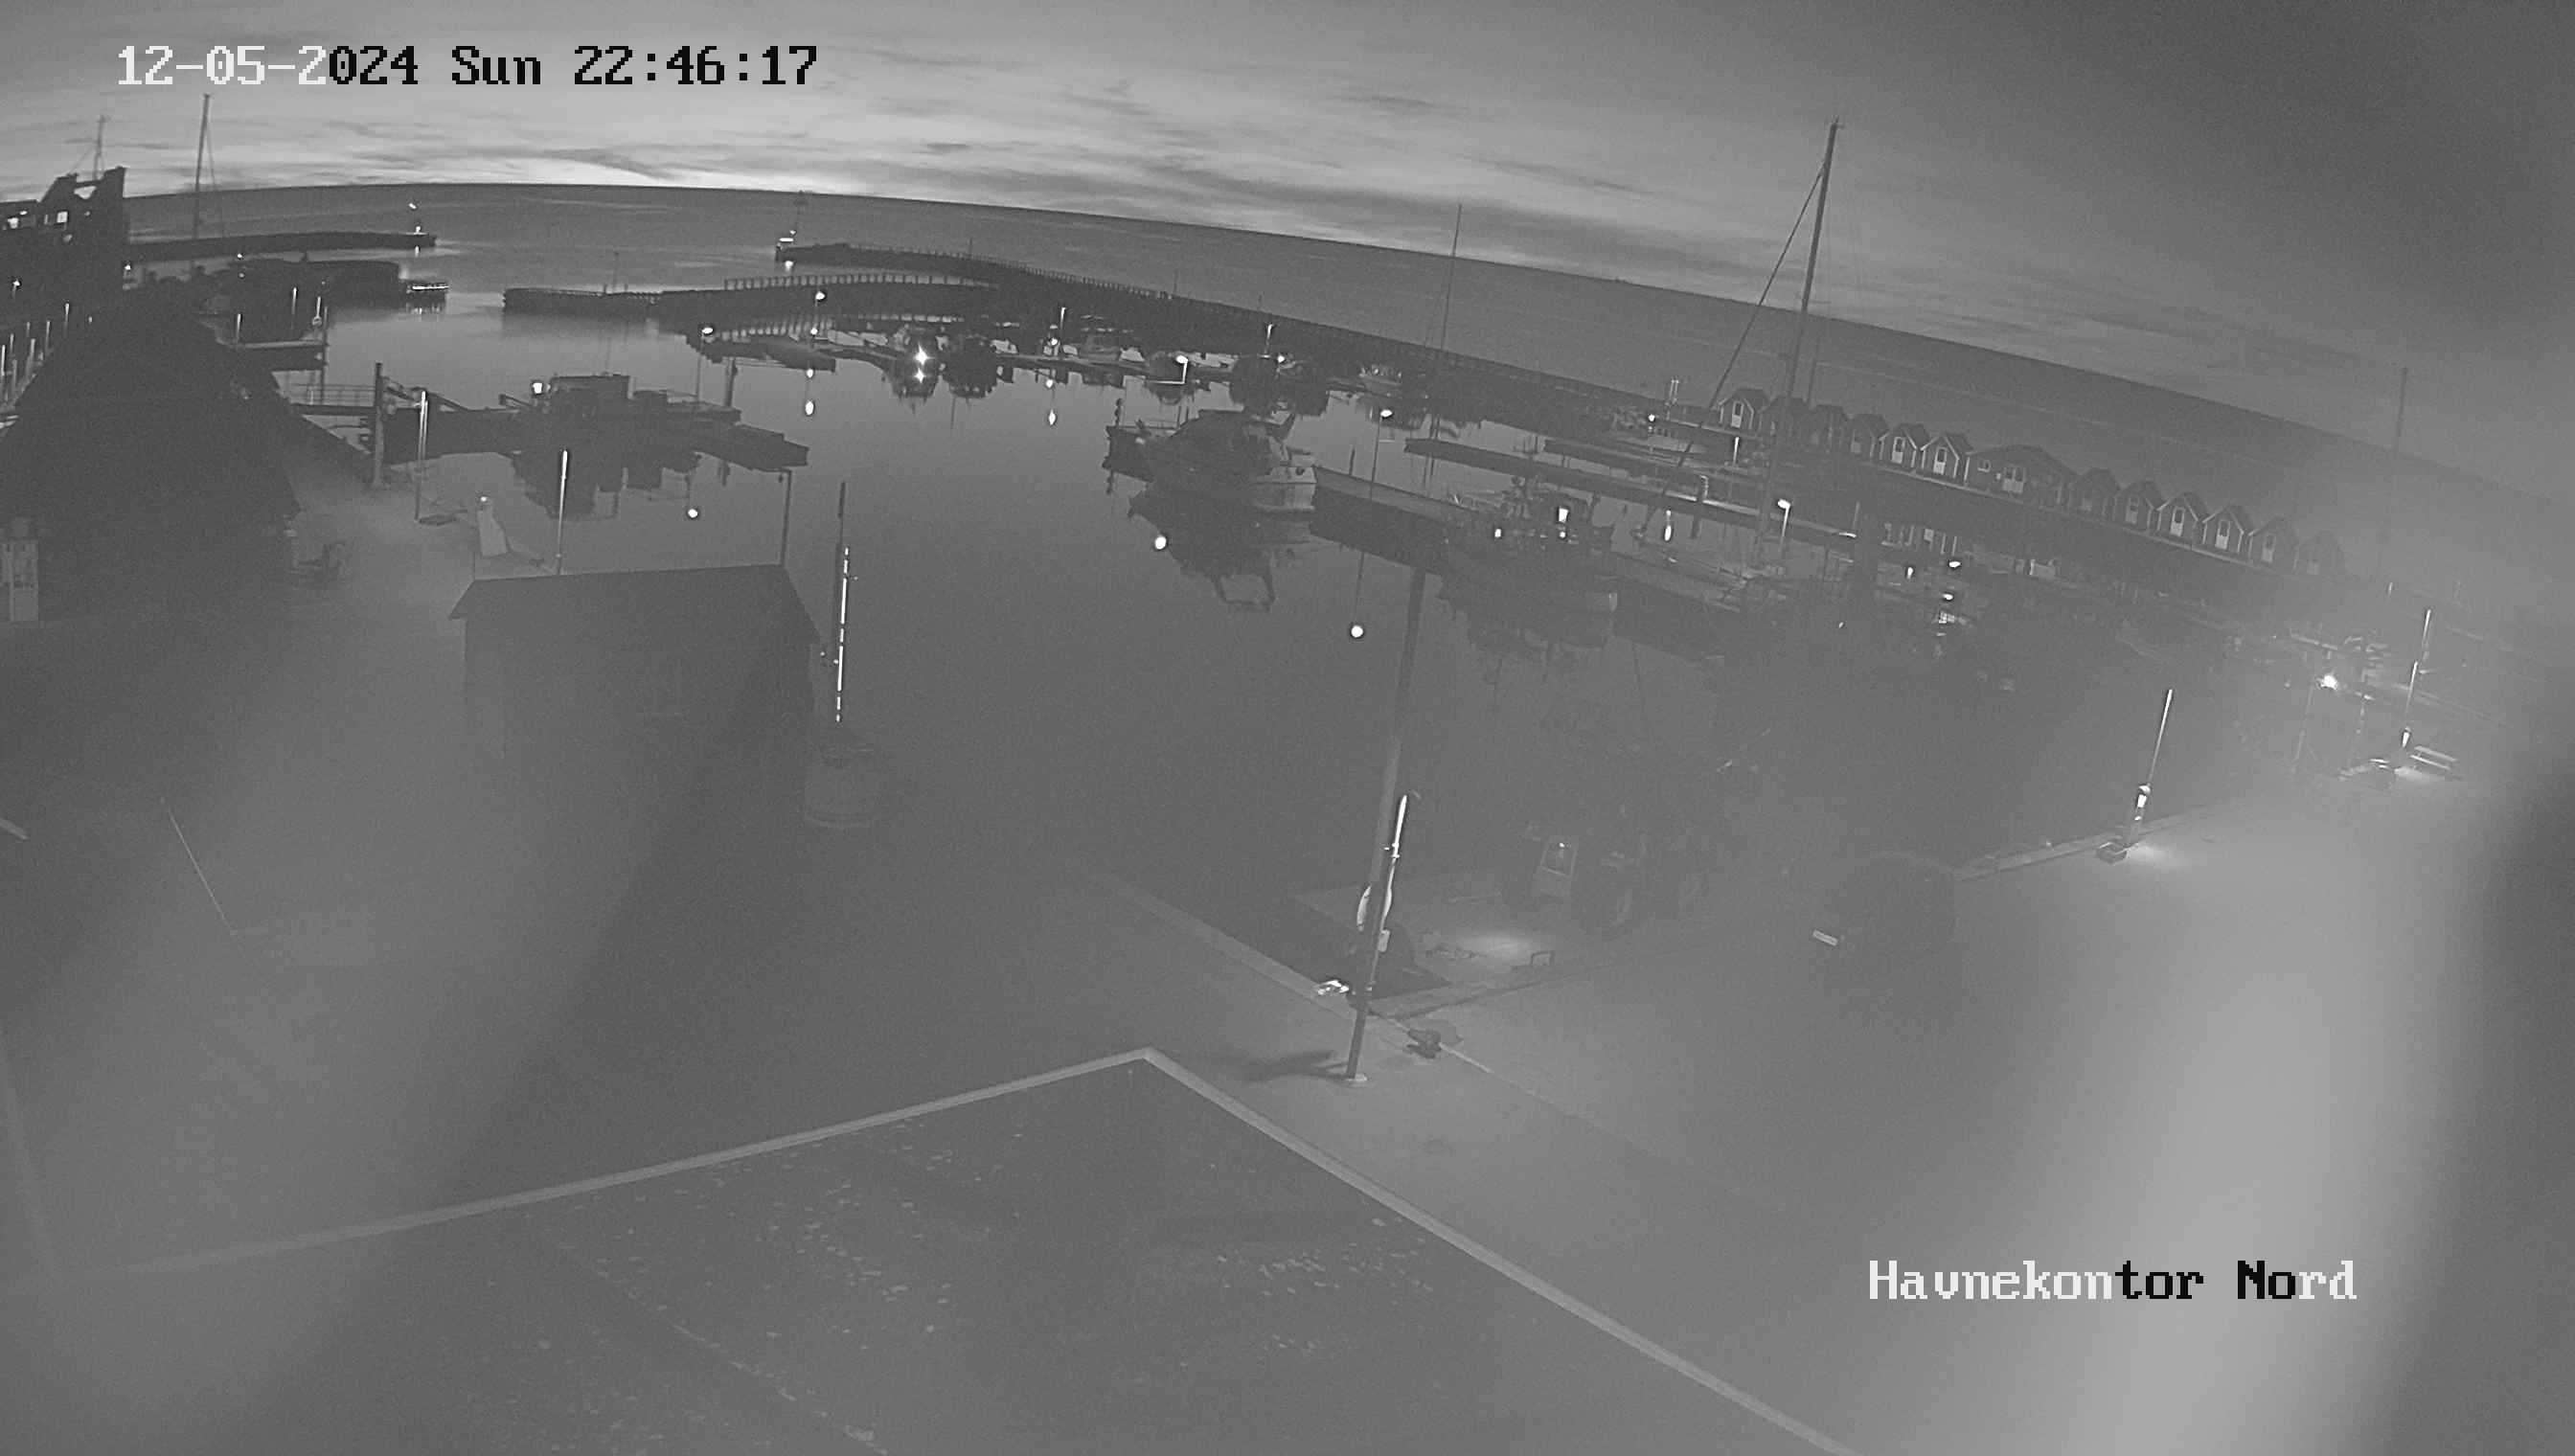 Vesterø Havn (Læsø) Sa. 22:47